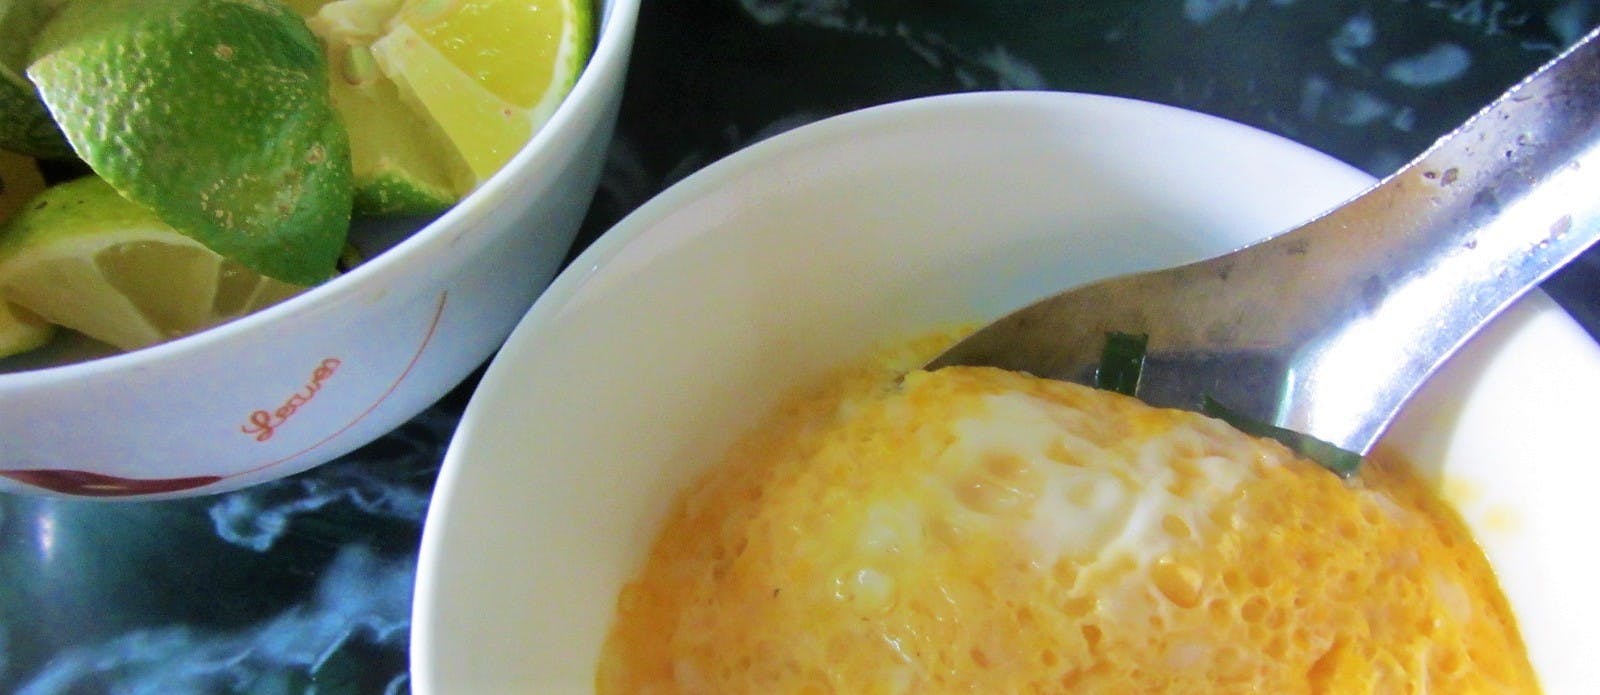 Rice wine pudding - rượu nếp hấp trứng - Vietnam